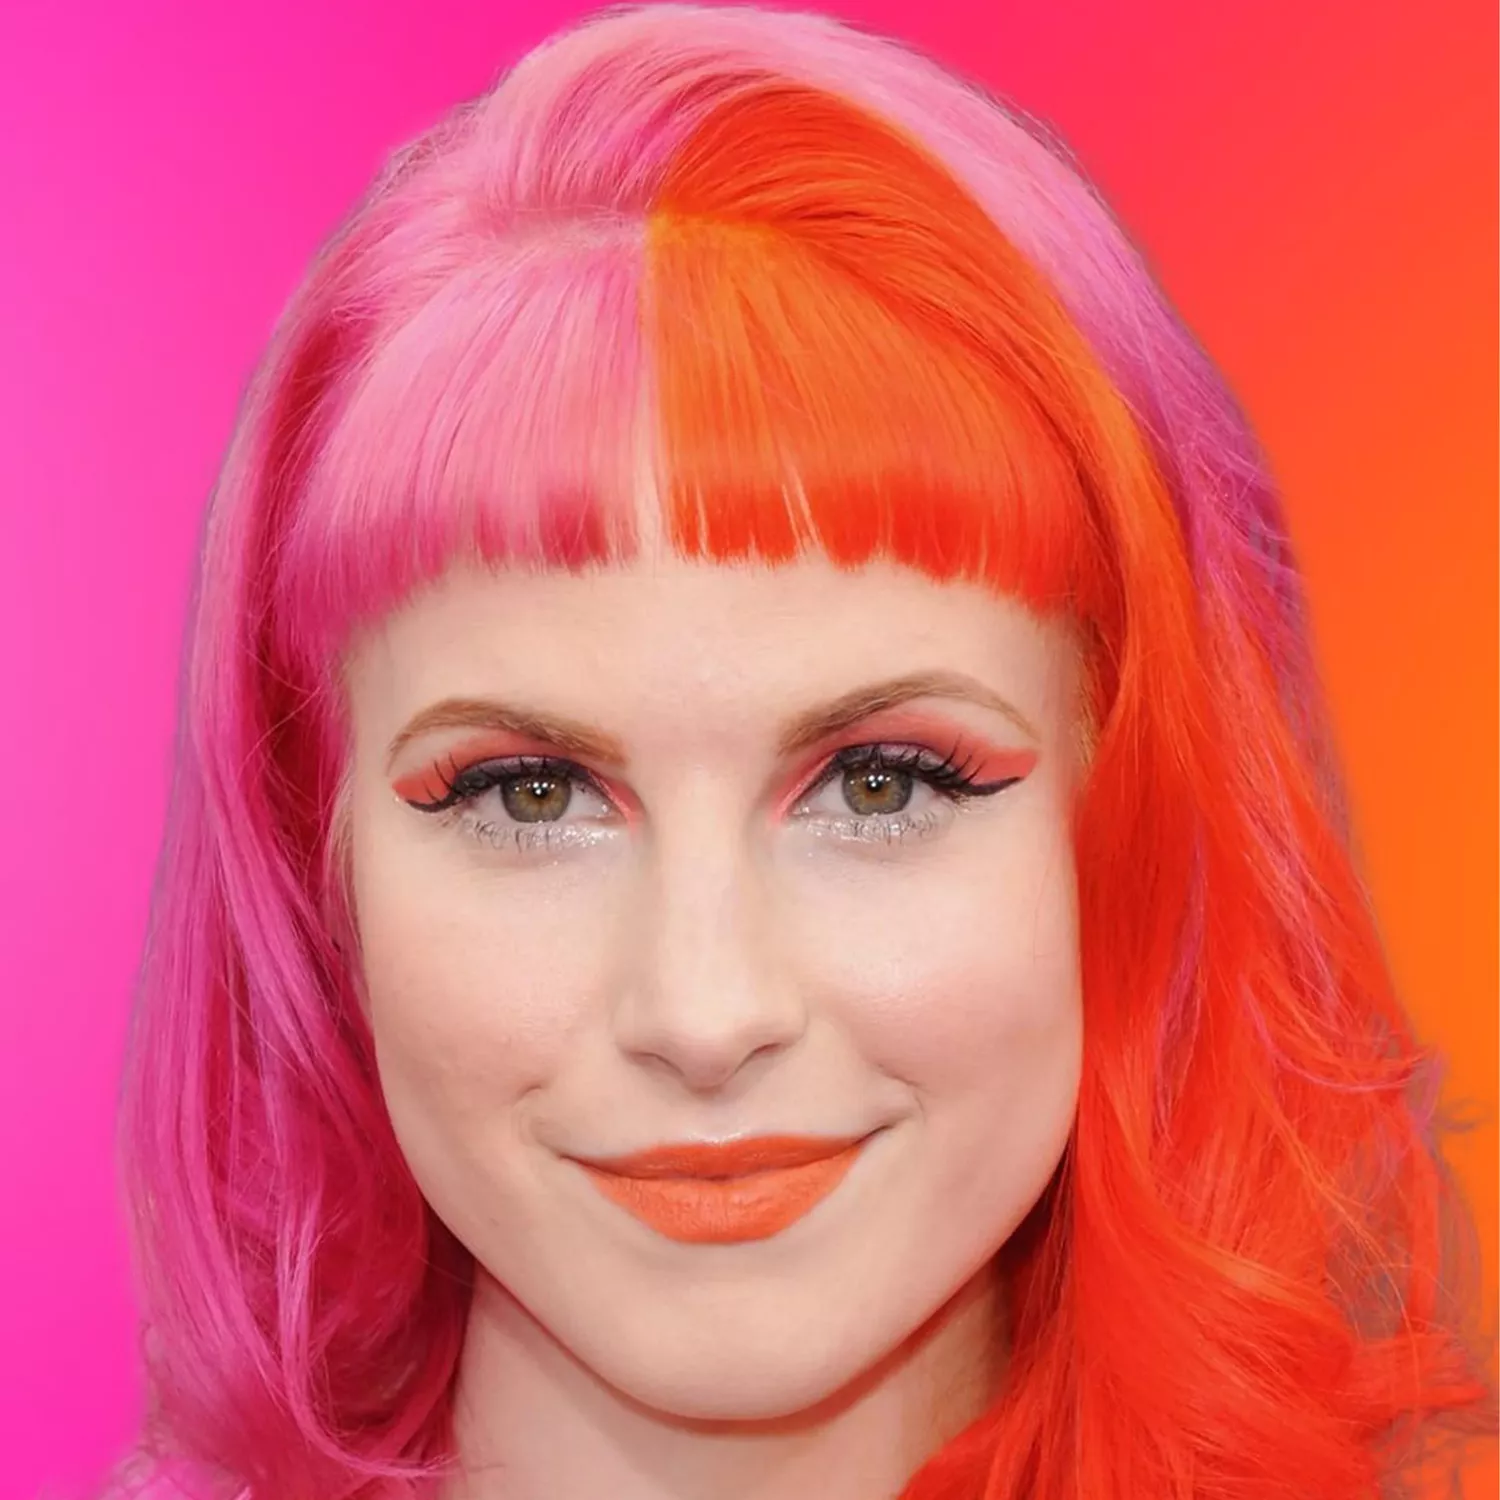 Hayley aux cheveux orange et rose